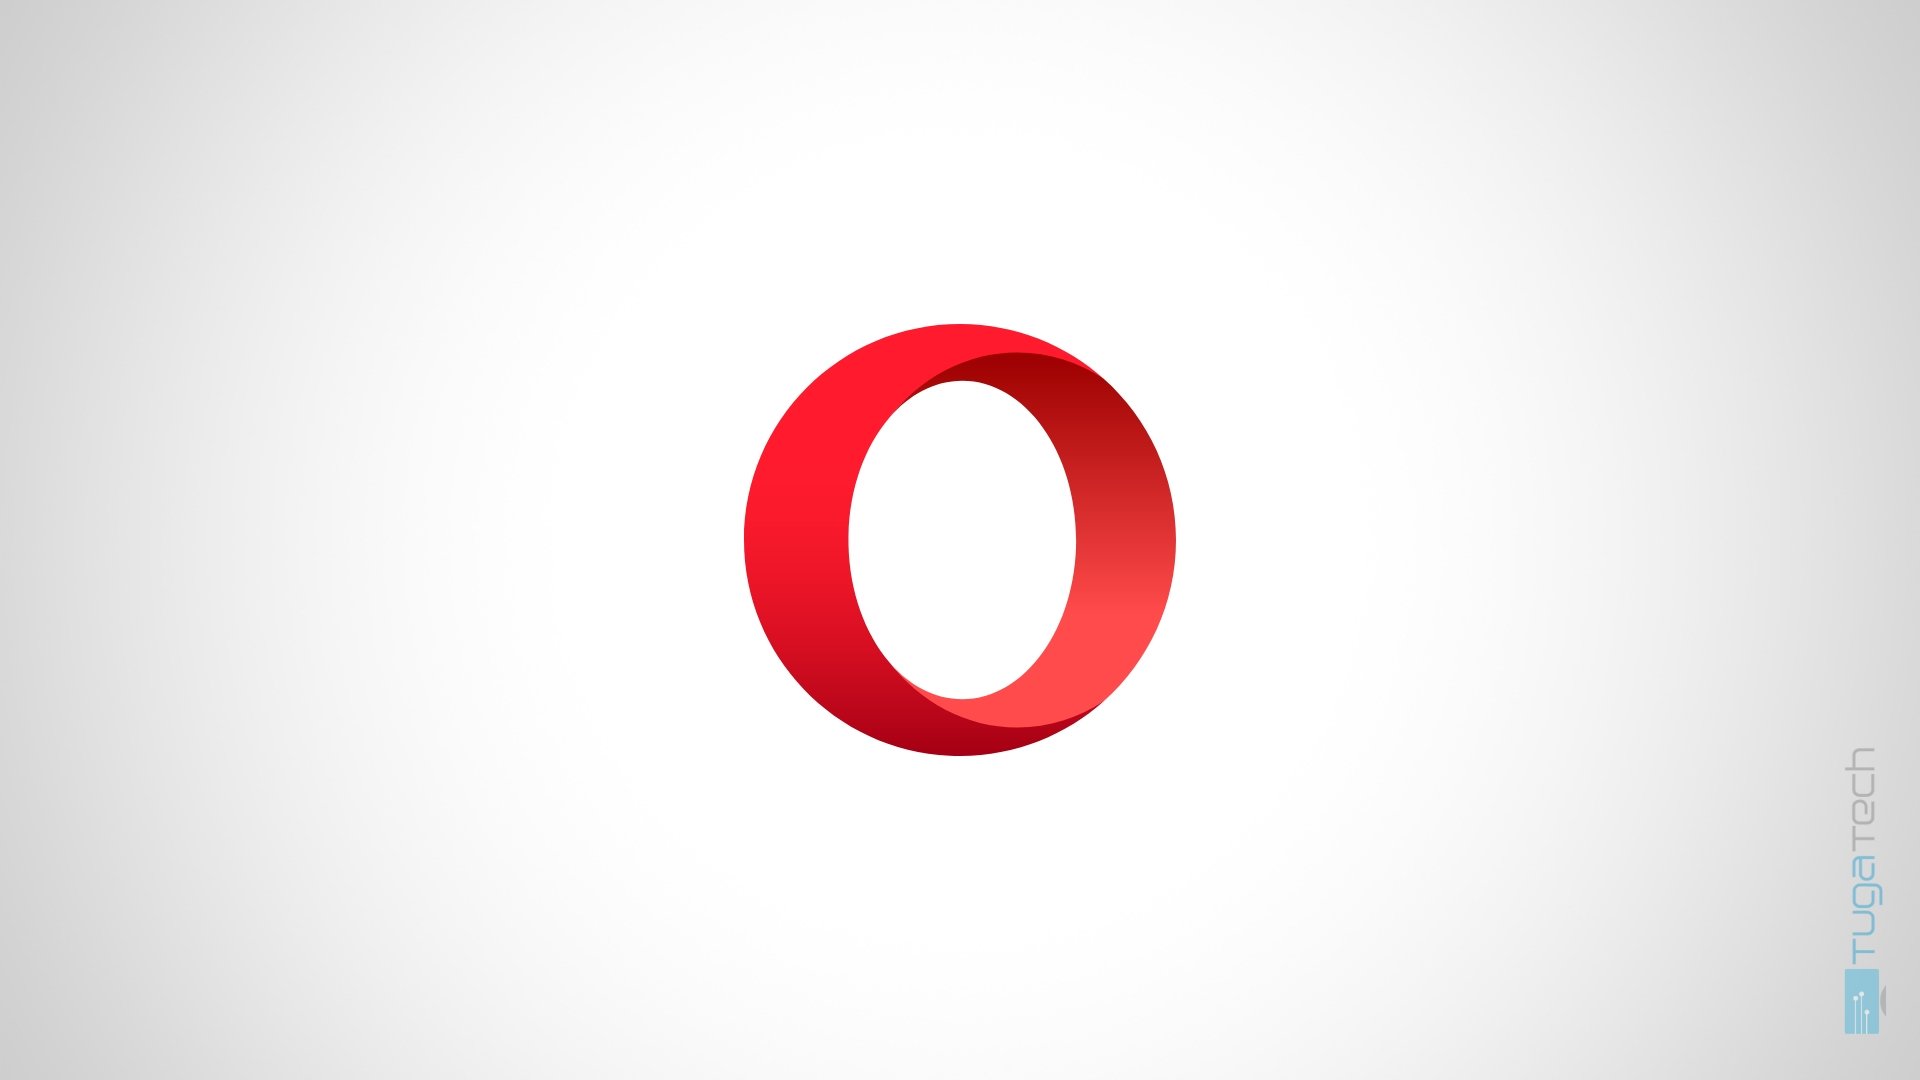 Opera regista aumento de utilizadores no iOS após mudanças na Europa